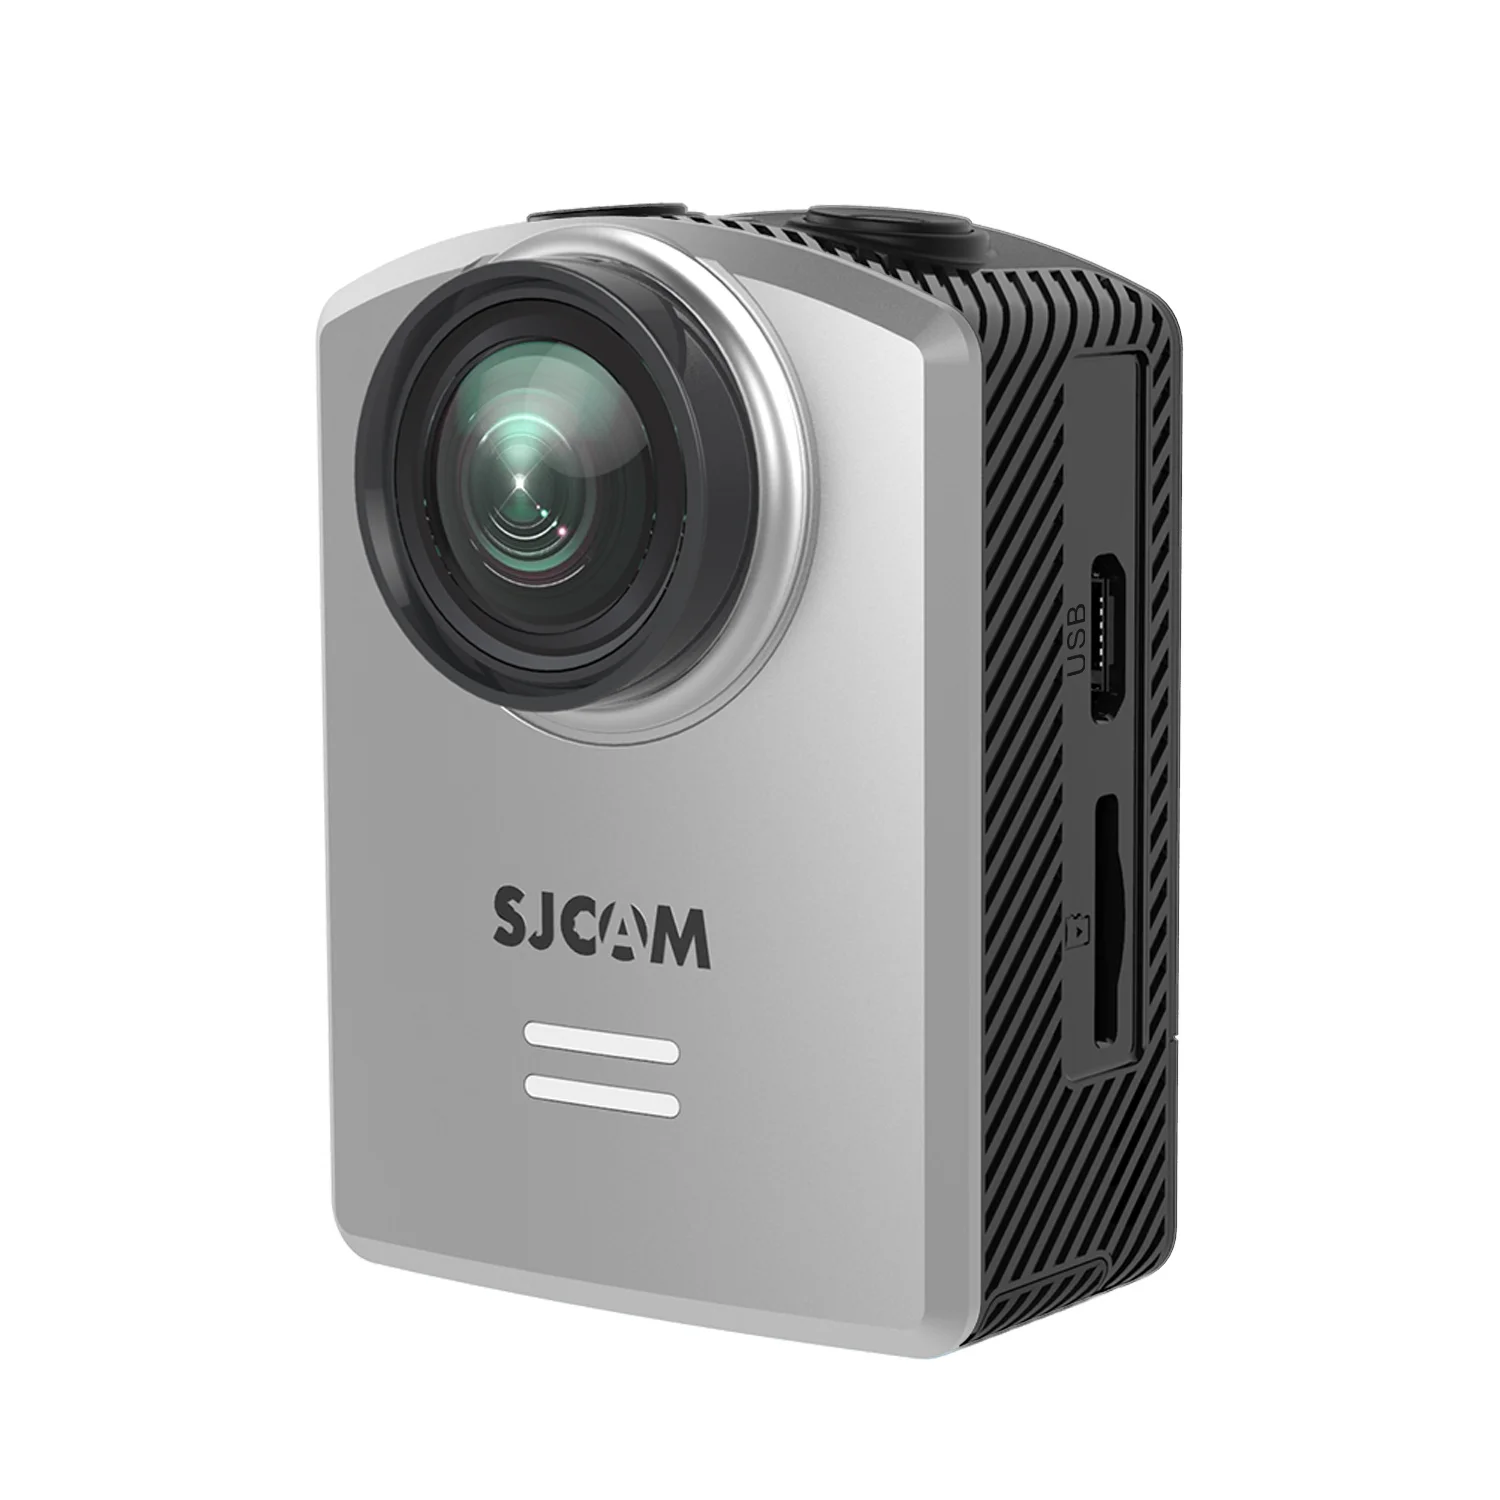 SJCAM M20 воздуха Wi-Fi мини-экшн Спортивная камера для шлема возможностью погружения на глубину до 30 м Водонепроницаемый 1296 P NTK96658 12MP 140 градусов объектив 1,5 'ЖК-дисплей спортивная видеокамера для подводной съемки - Цвет: Серебристый